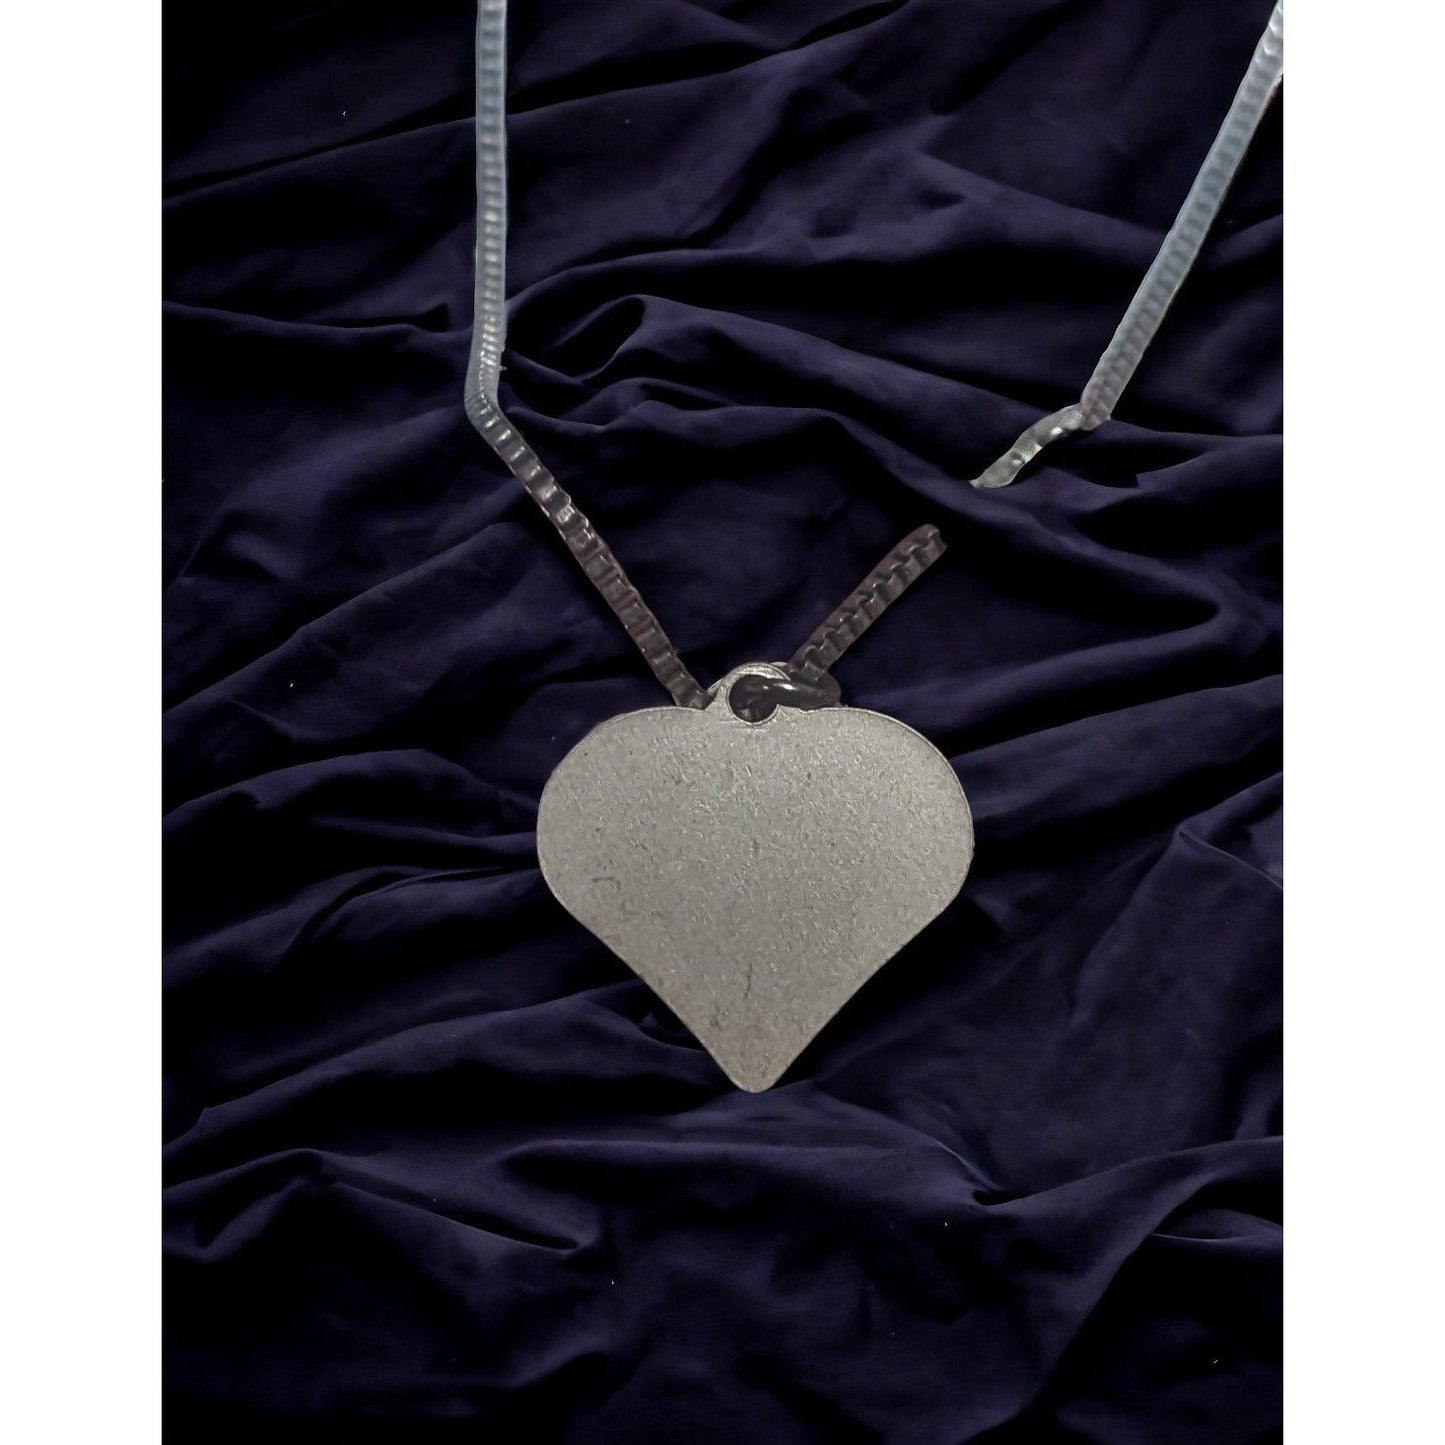 Saint Anthony Heart Shaped Pendant Necklace